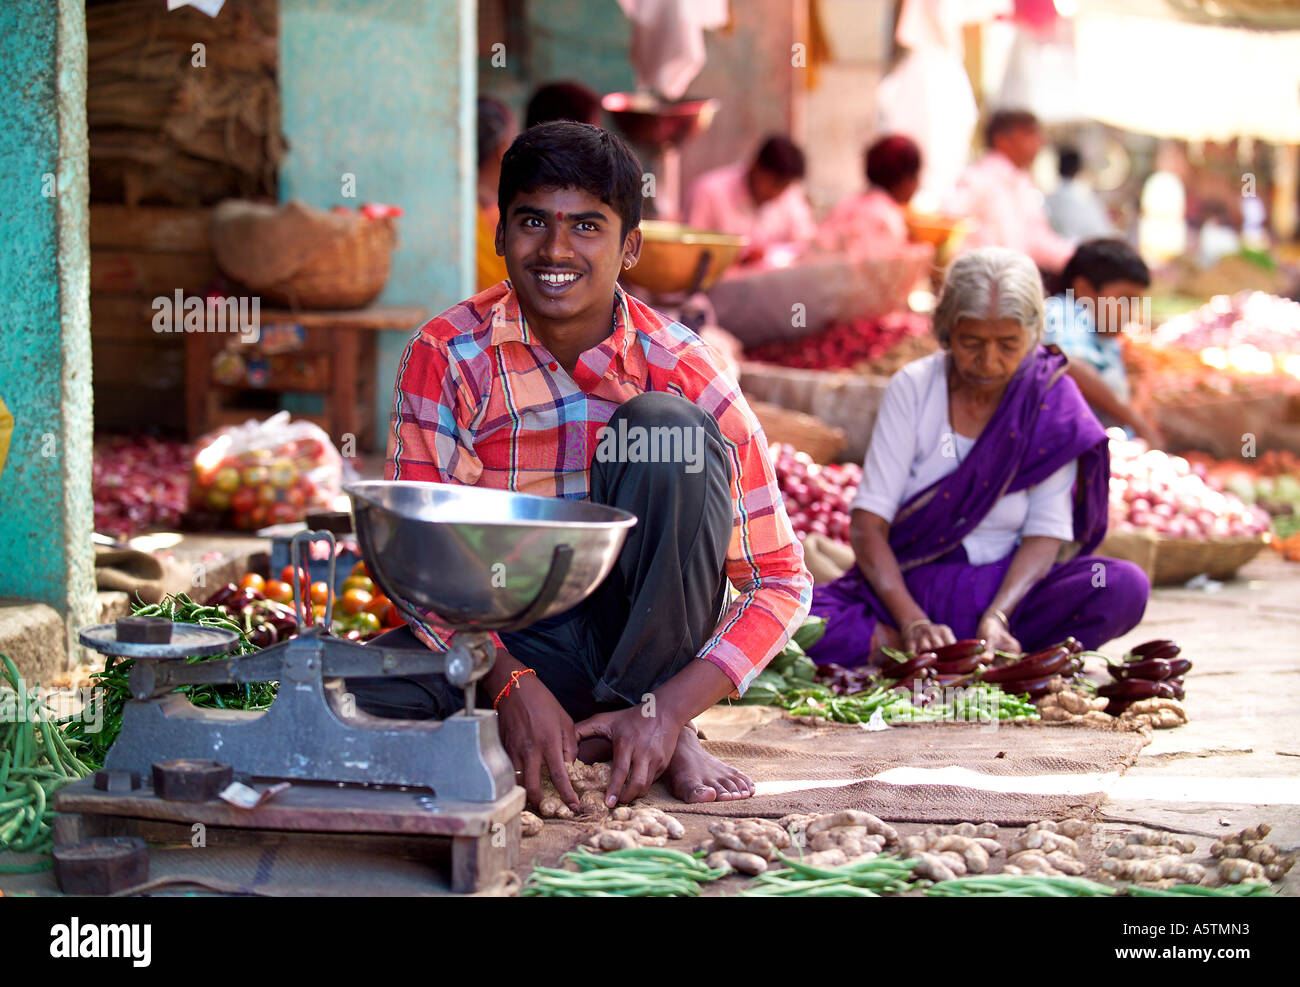 Jeune garçon riant la vente de légumes, fruits et légumes du marché Devaraja, Mysore, Inde. Banque D'Images